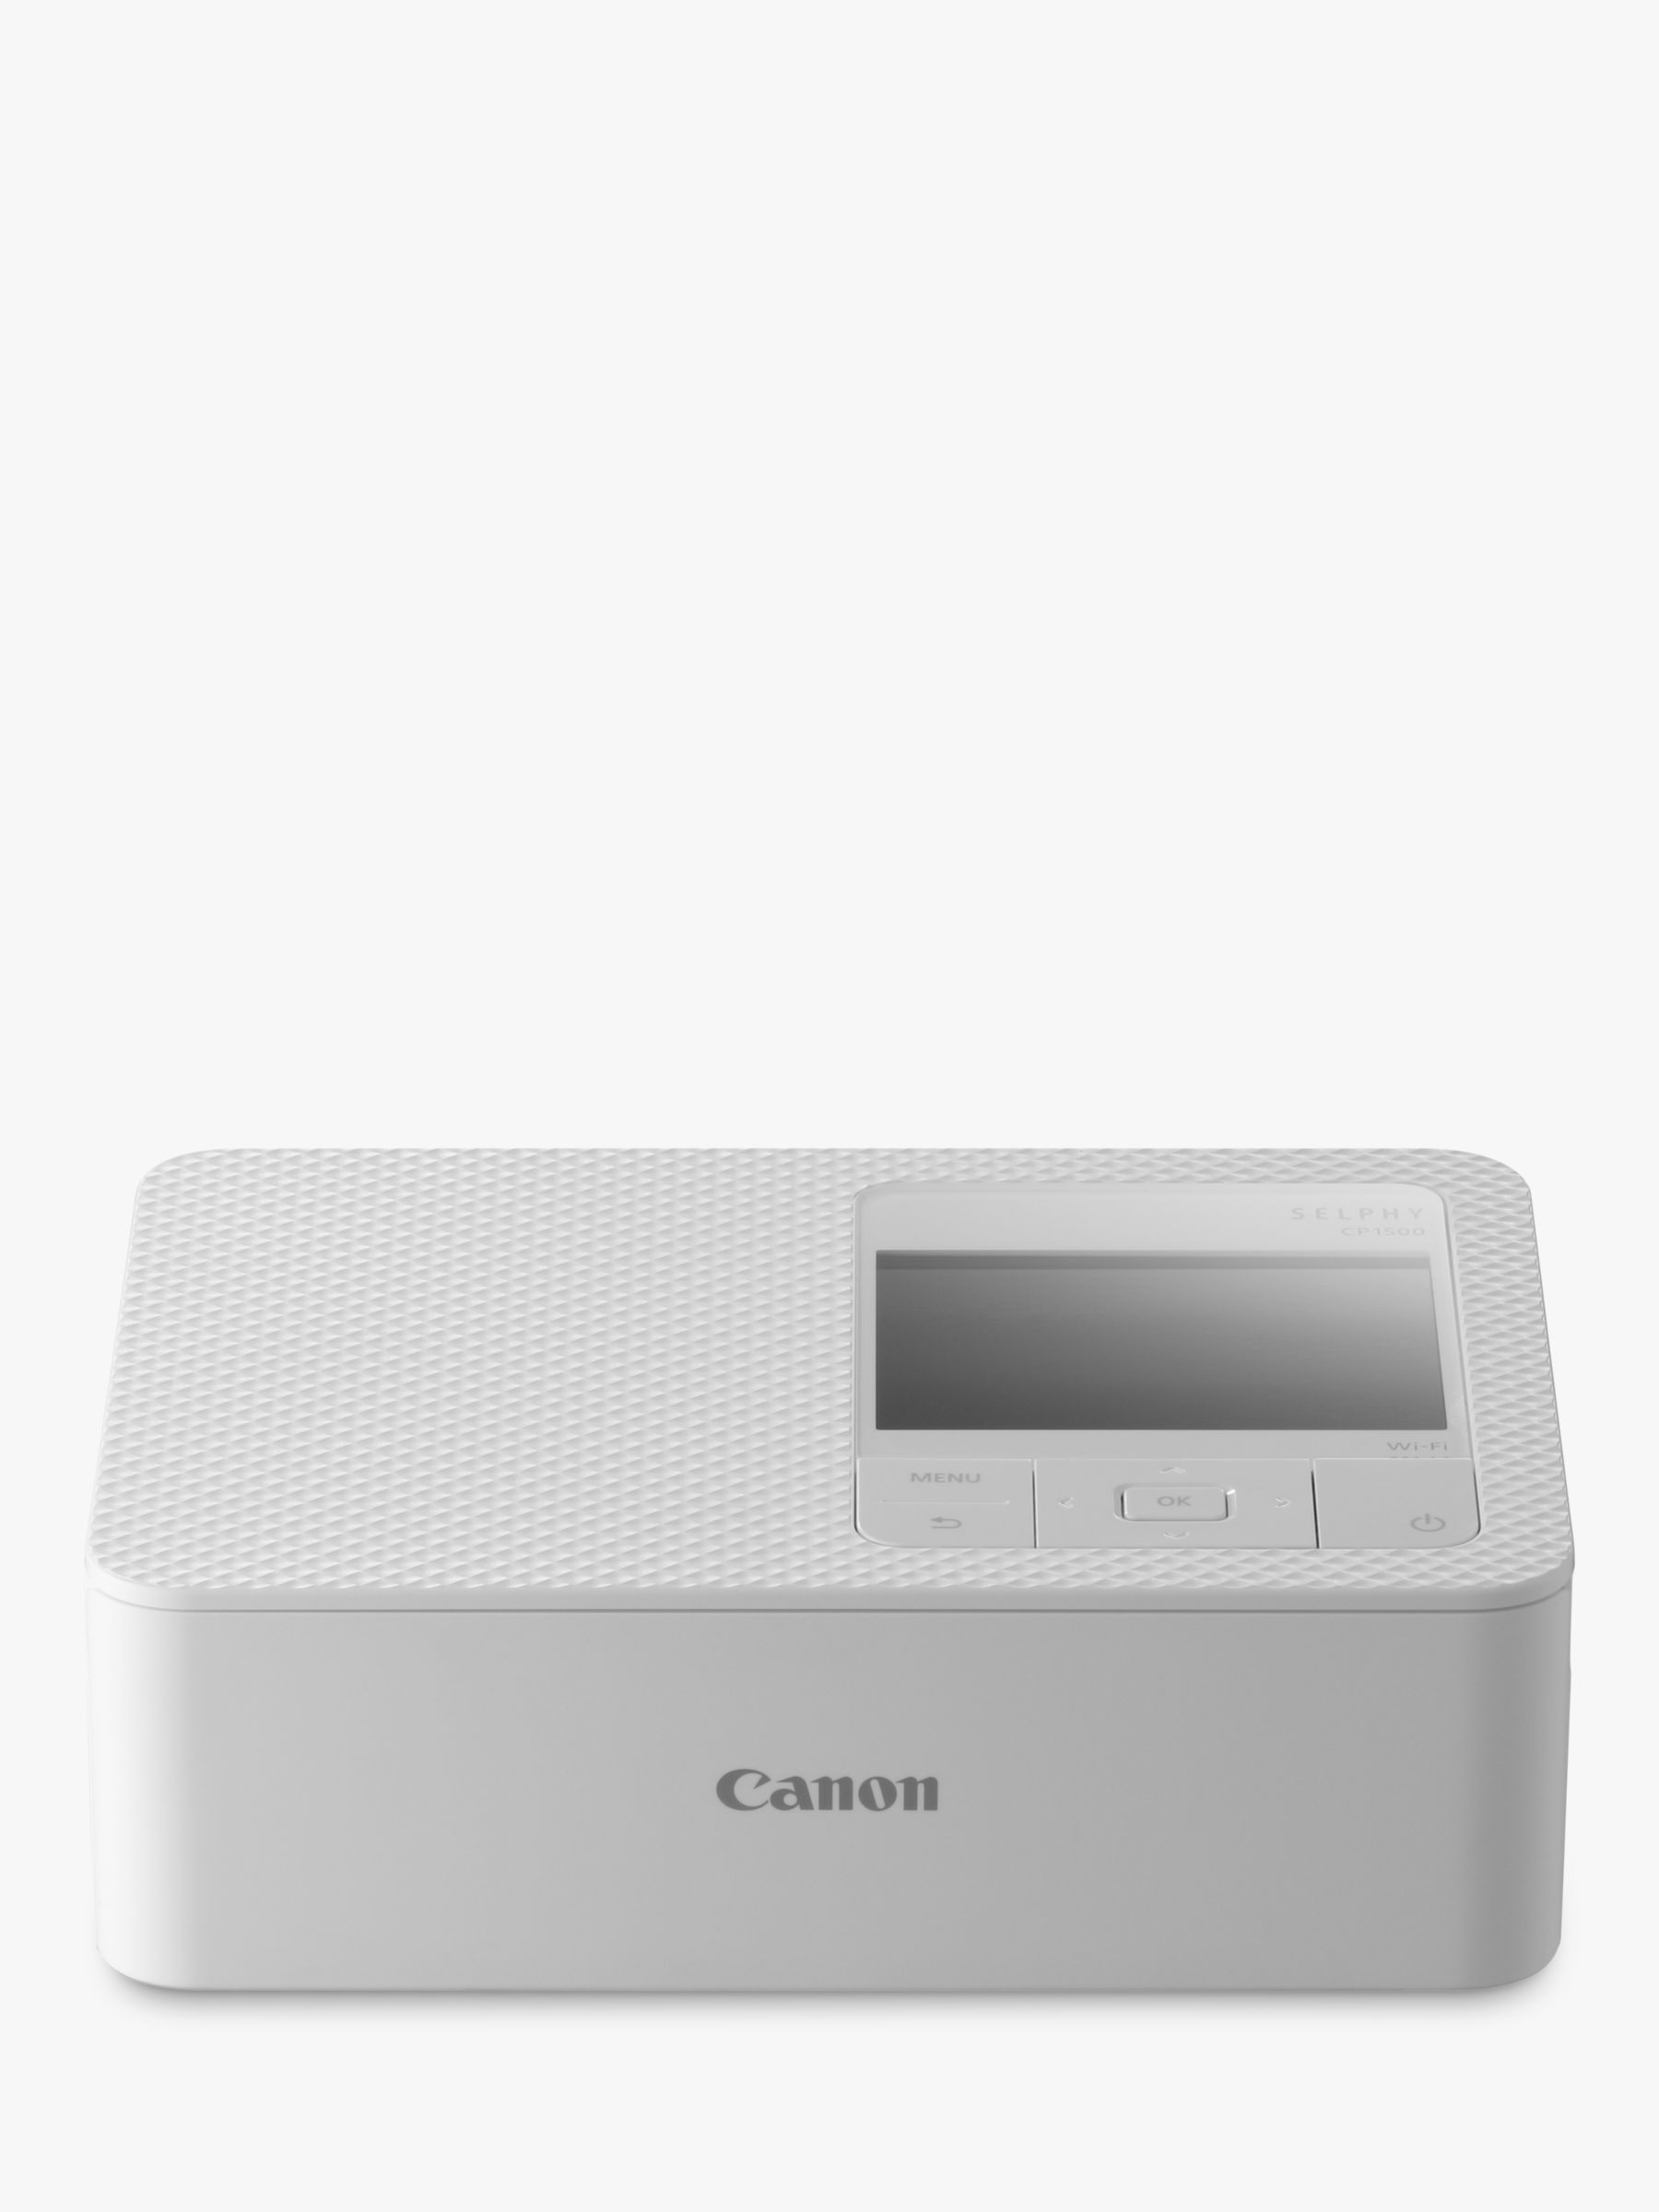 Canon Selphy CP1300 Compact Photo Printer Black 